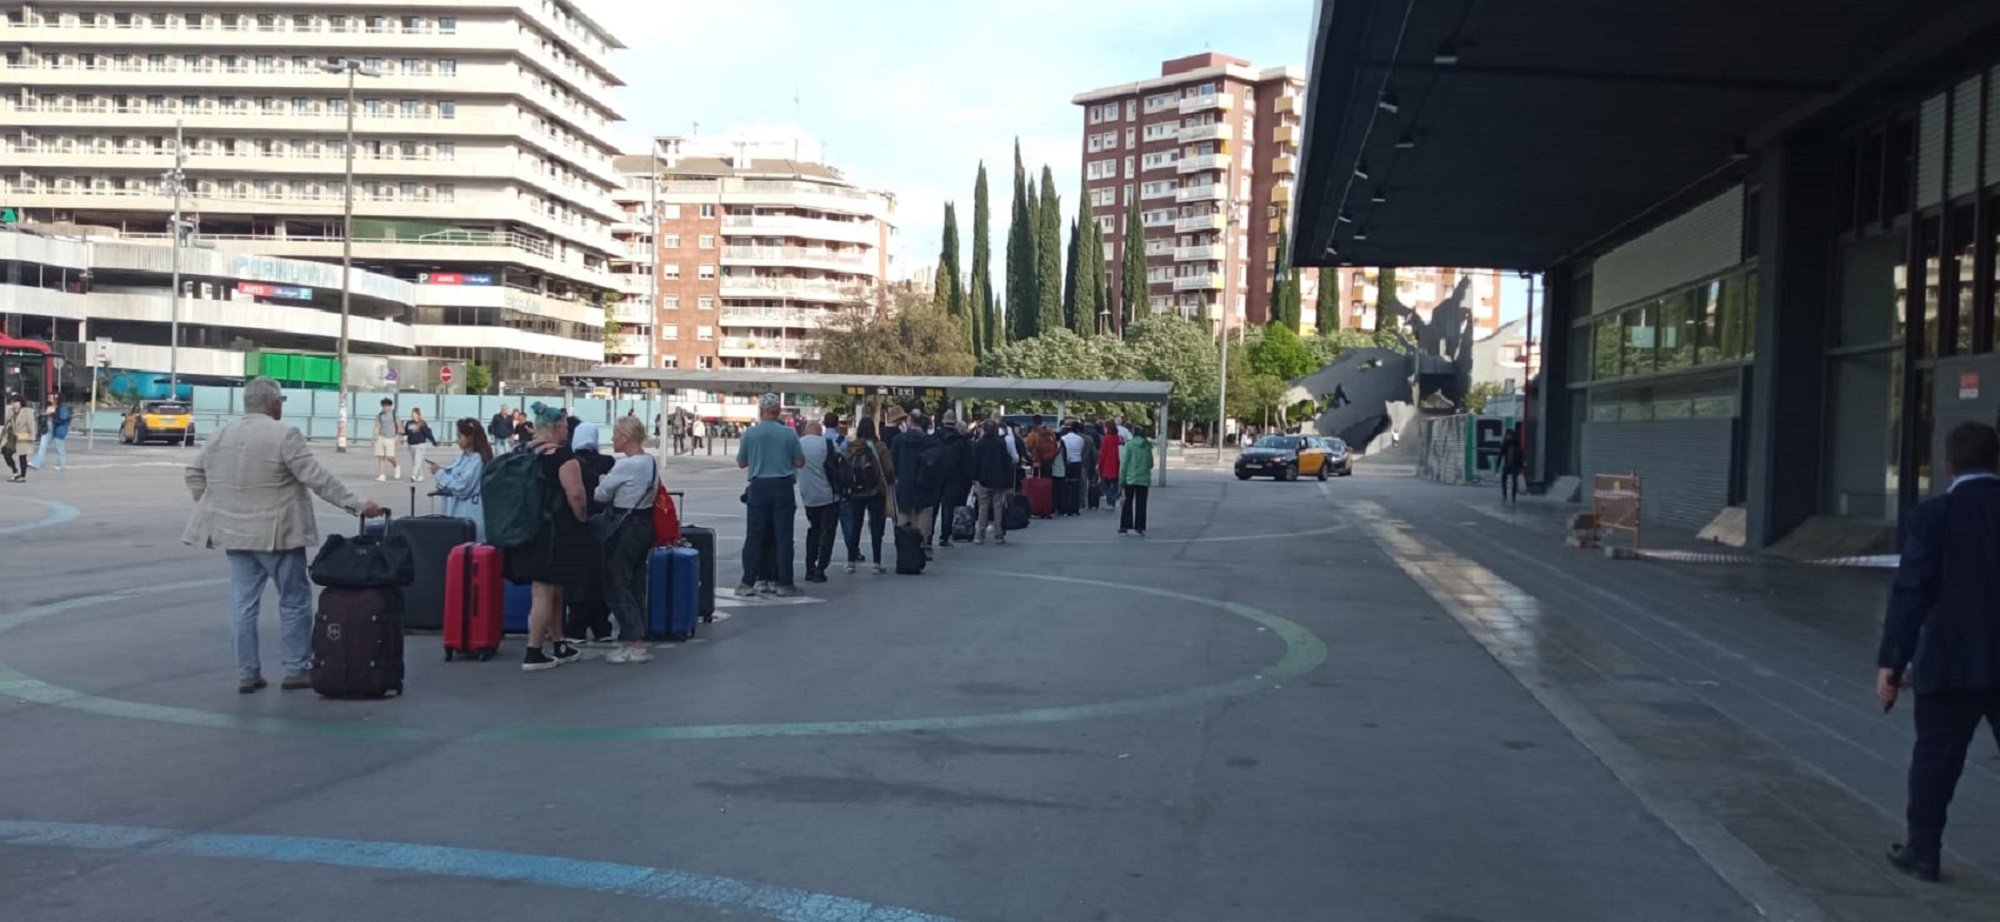 Els taxistes clamen contra els greus problemes de mobilitat a Barcelona: “Els taxis no volen”